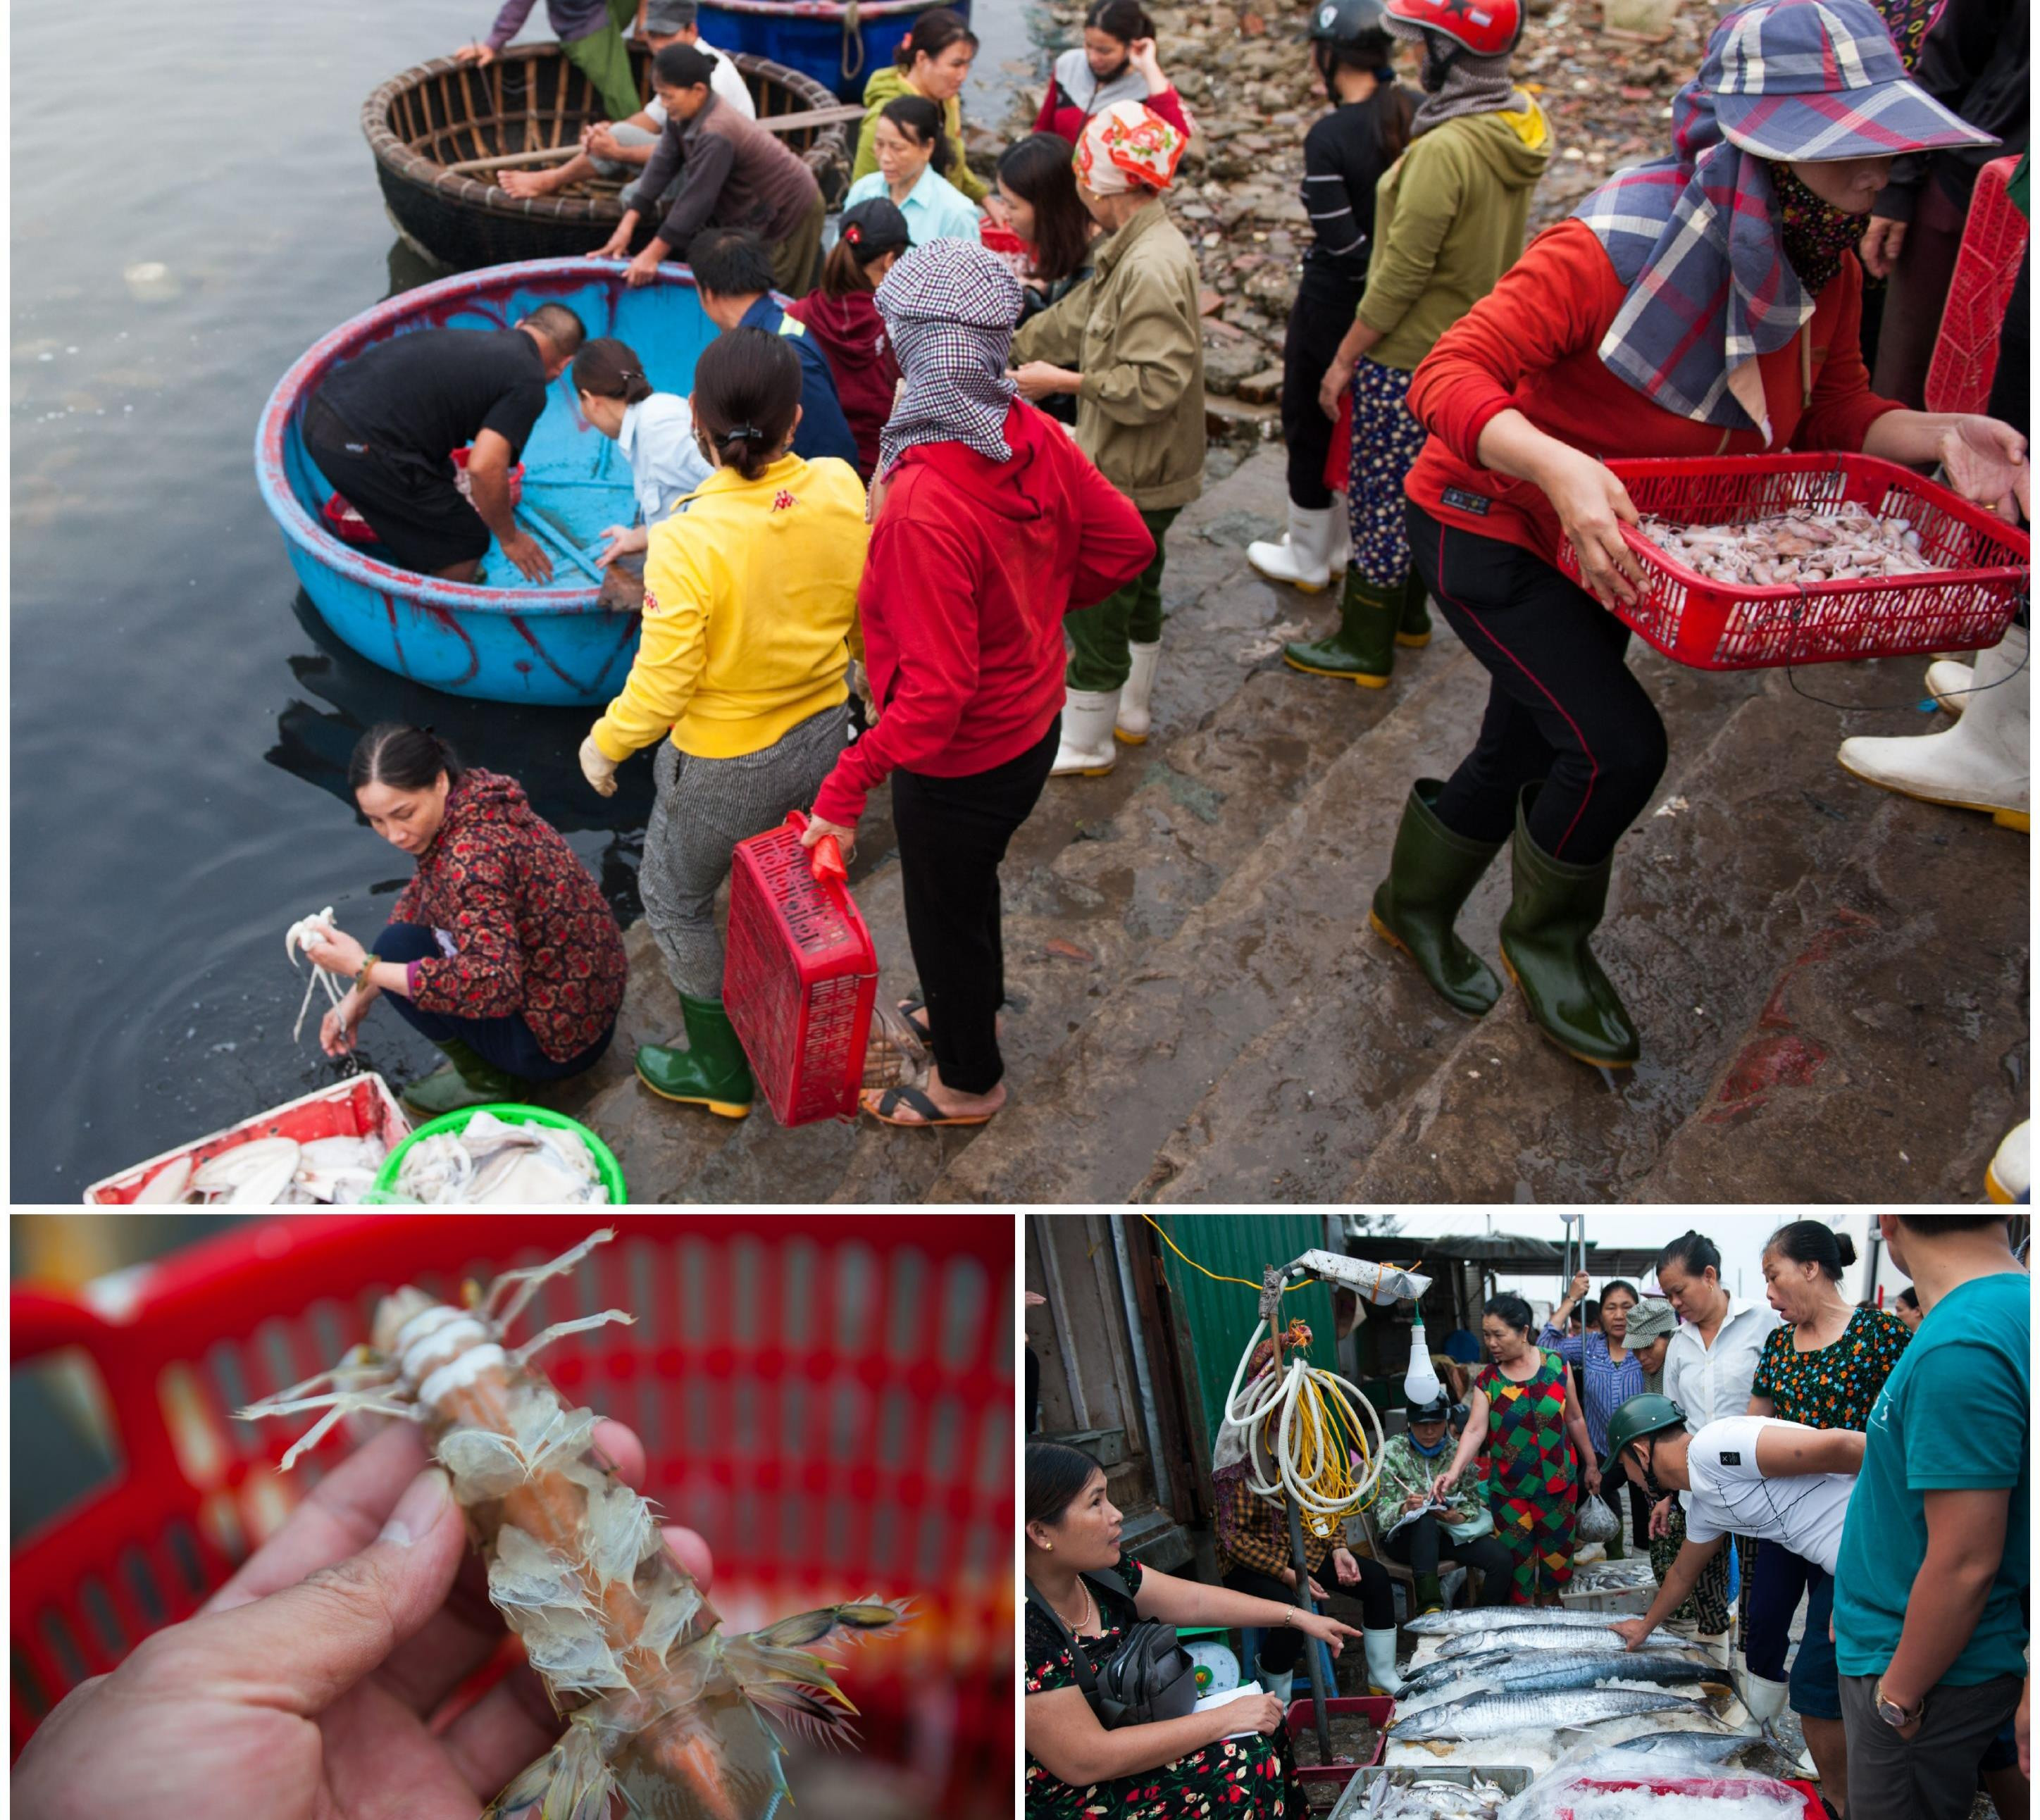 Chợ hải sản Cửa Lò được biết đến là nơi có nhiều hải sản tươi ngon với giá cả hợp lý. Ảnh tư liệu